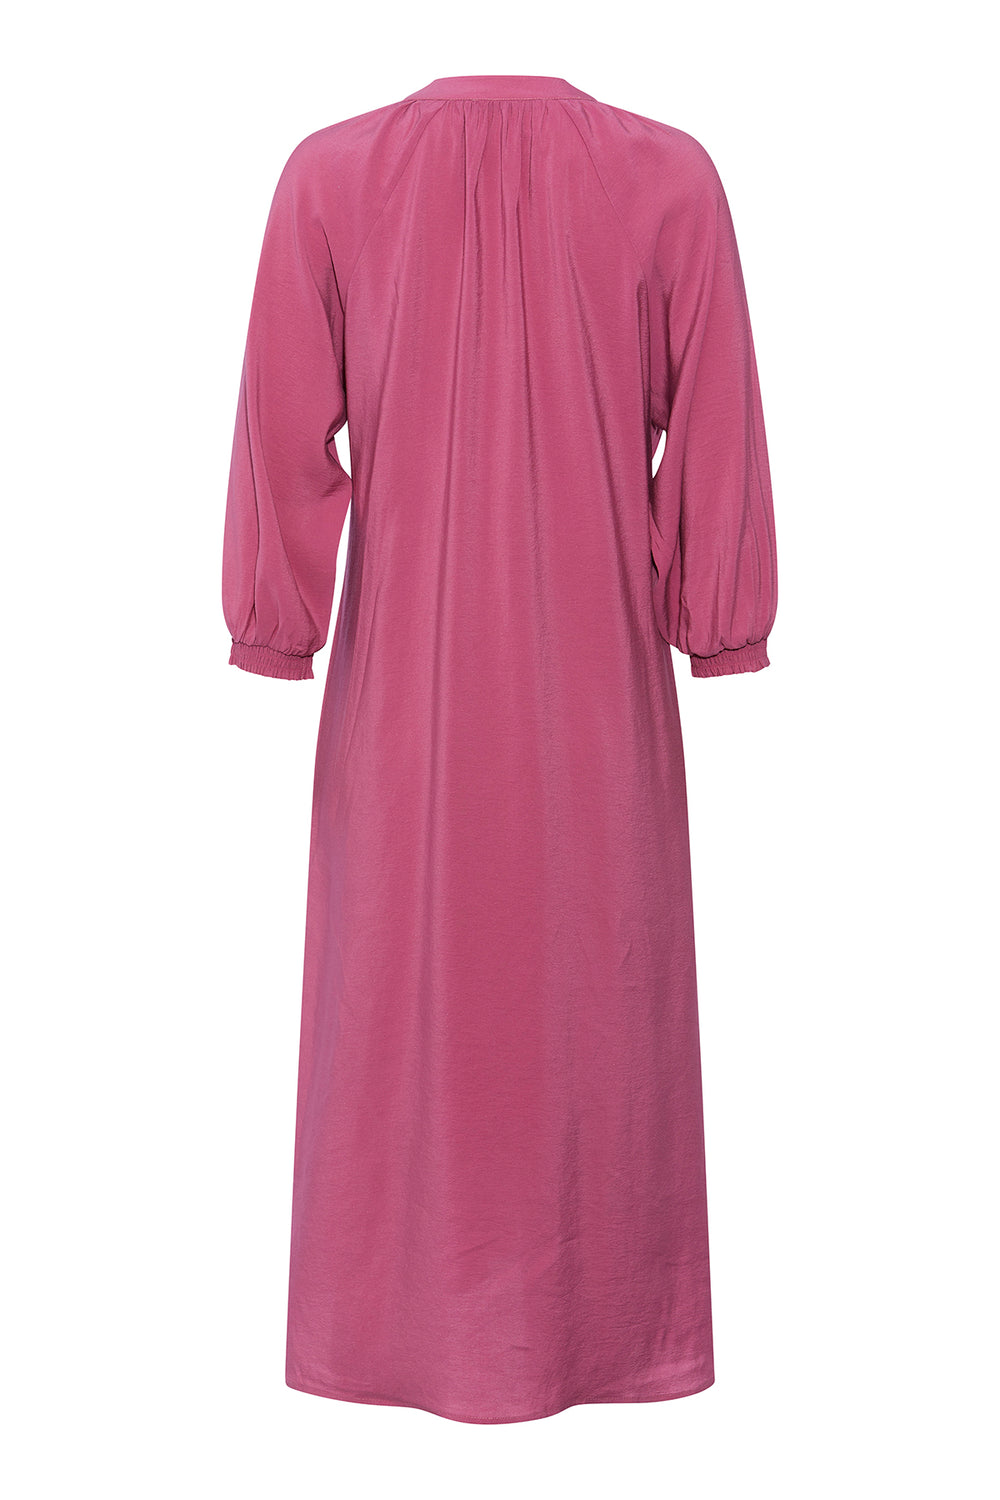 PBO Fiorma kjole DRESSES 853 Dry rose